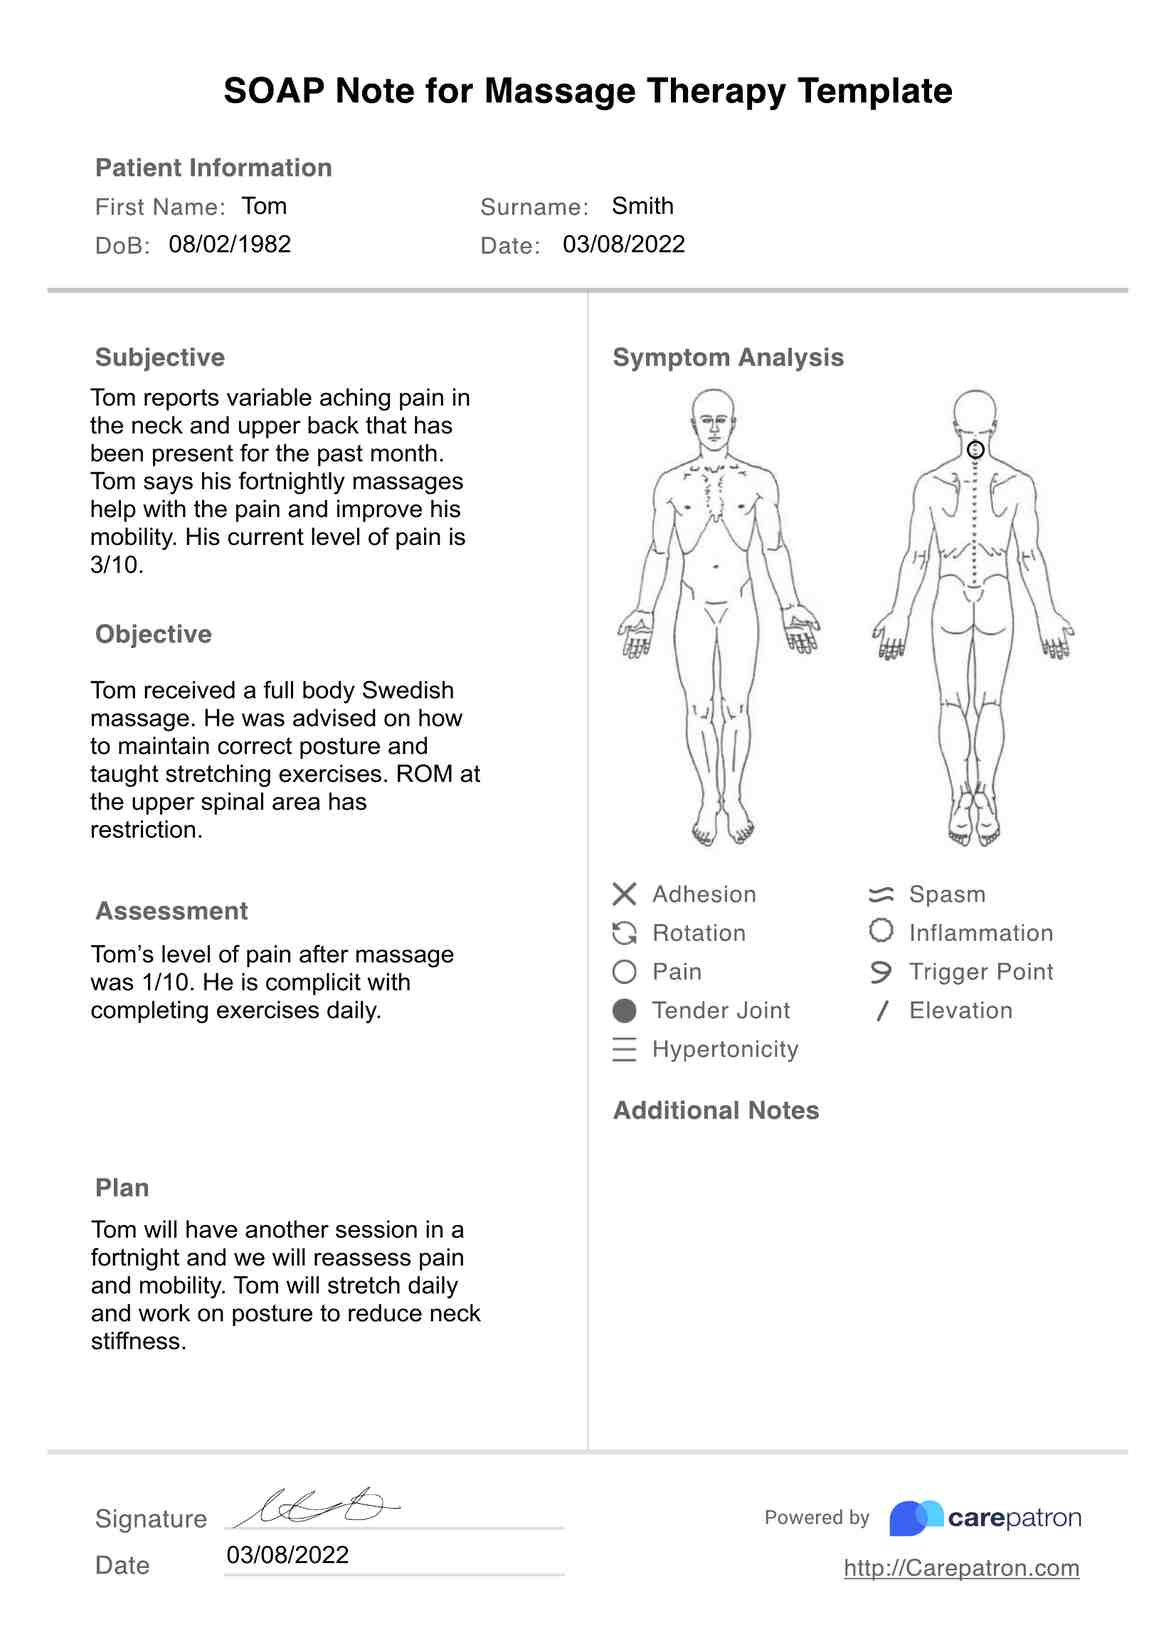 Notas SOAP de Masaje terapéutico PDF Example